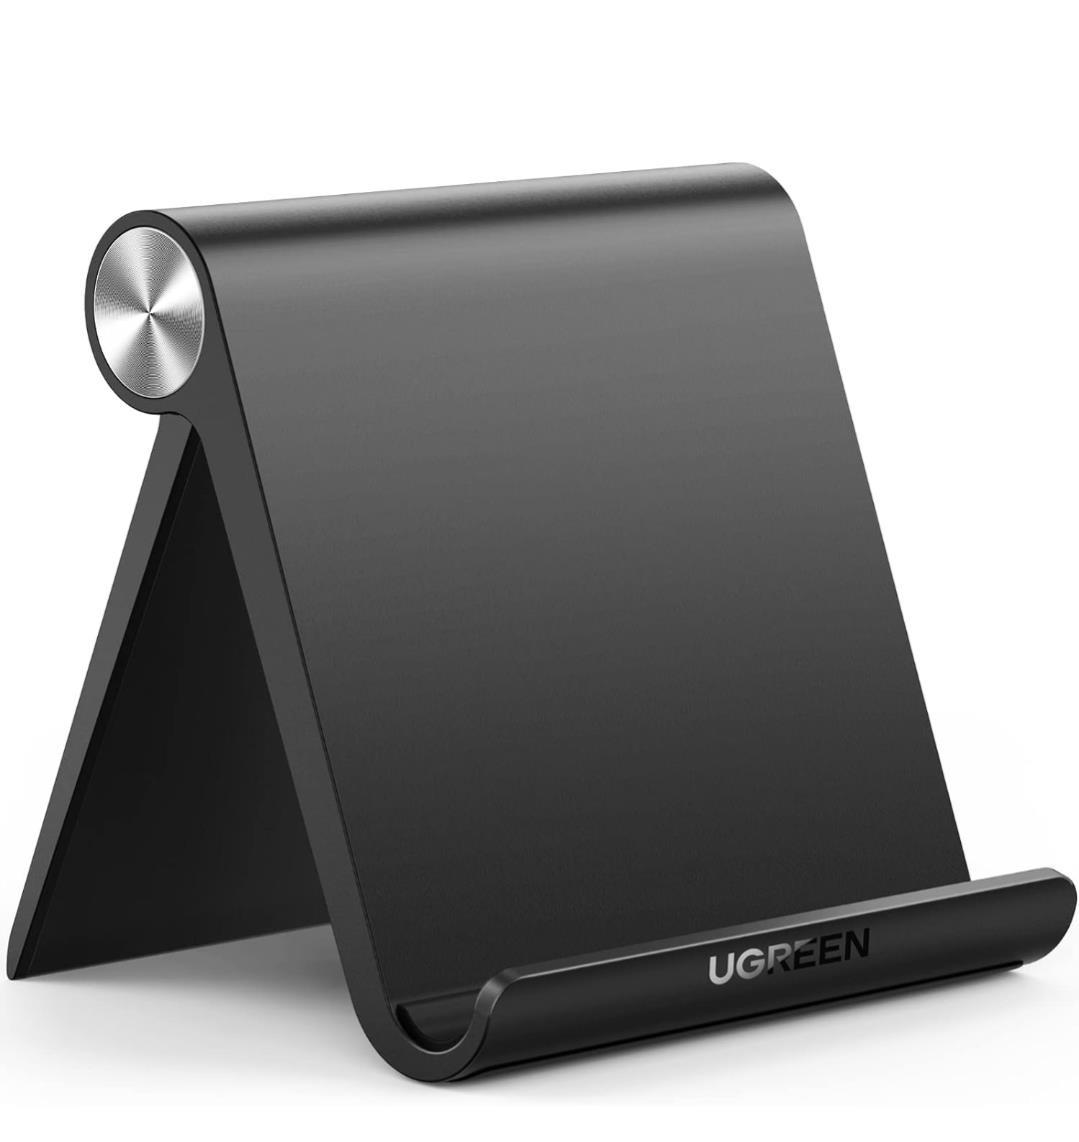 UGREEN Tablet Stand Holder Adjustable Protable